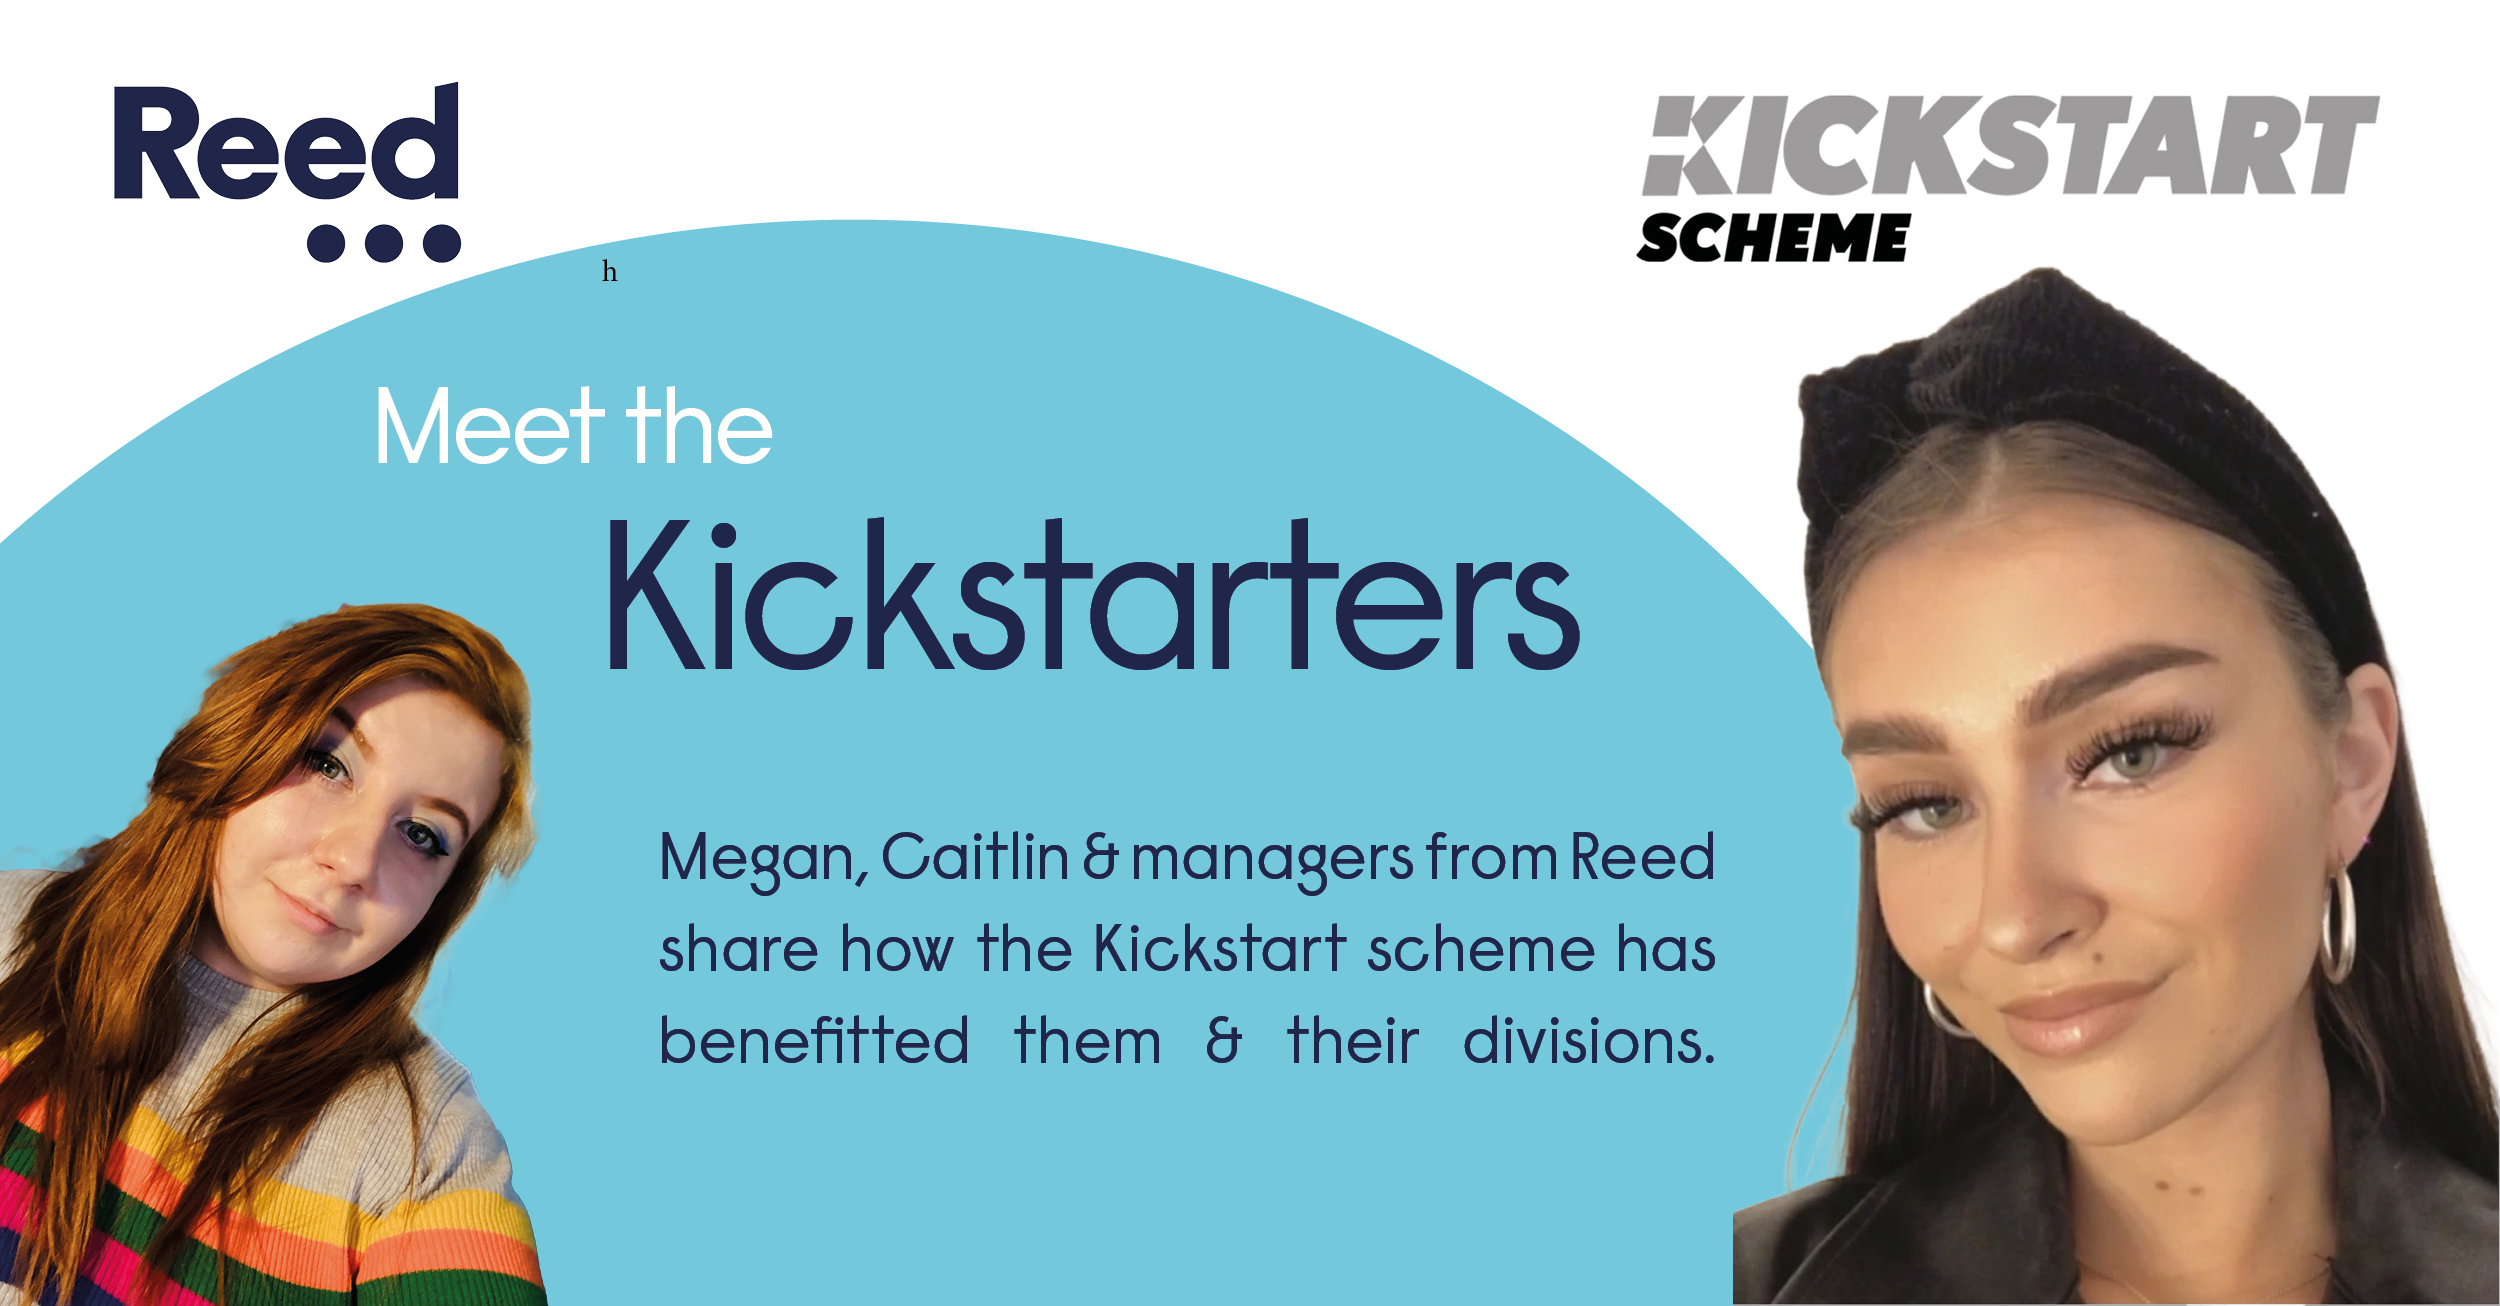 meet the kickstarters - kickstart scheme blog at Reed